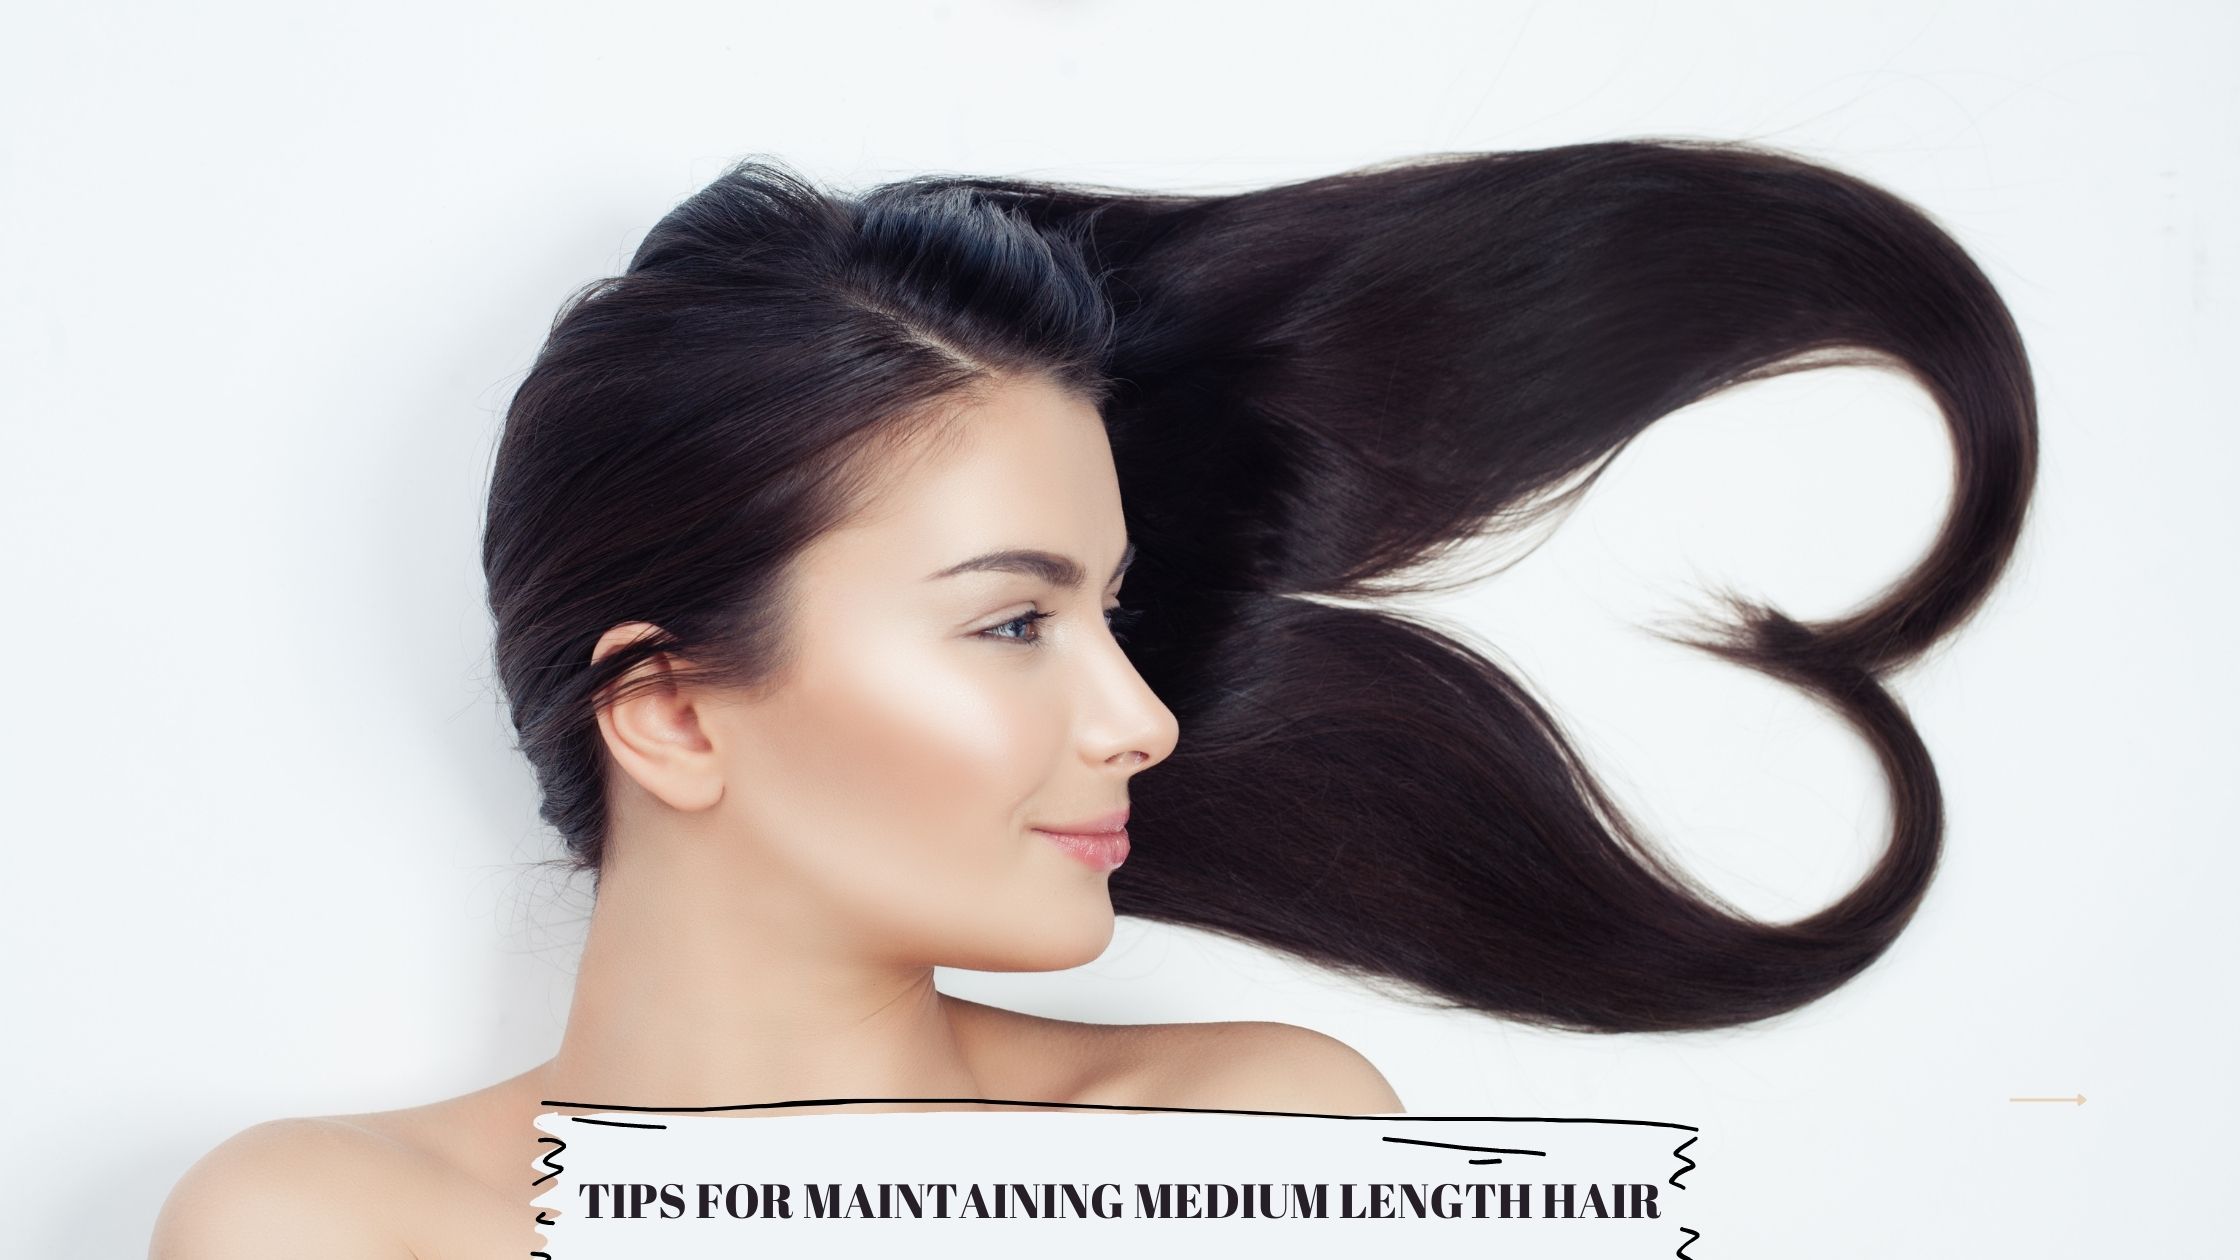 Tips for Maintaining Medium Length Hair.